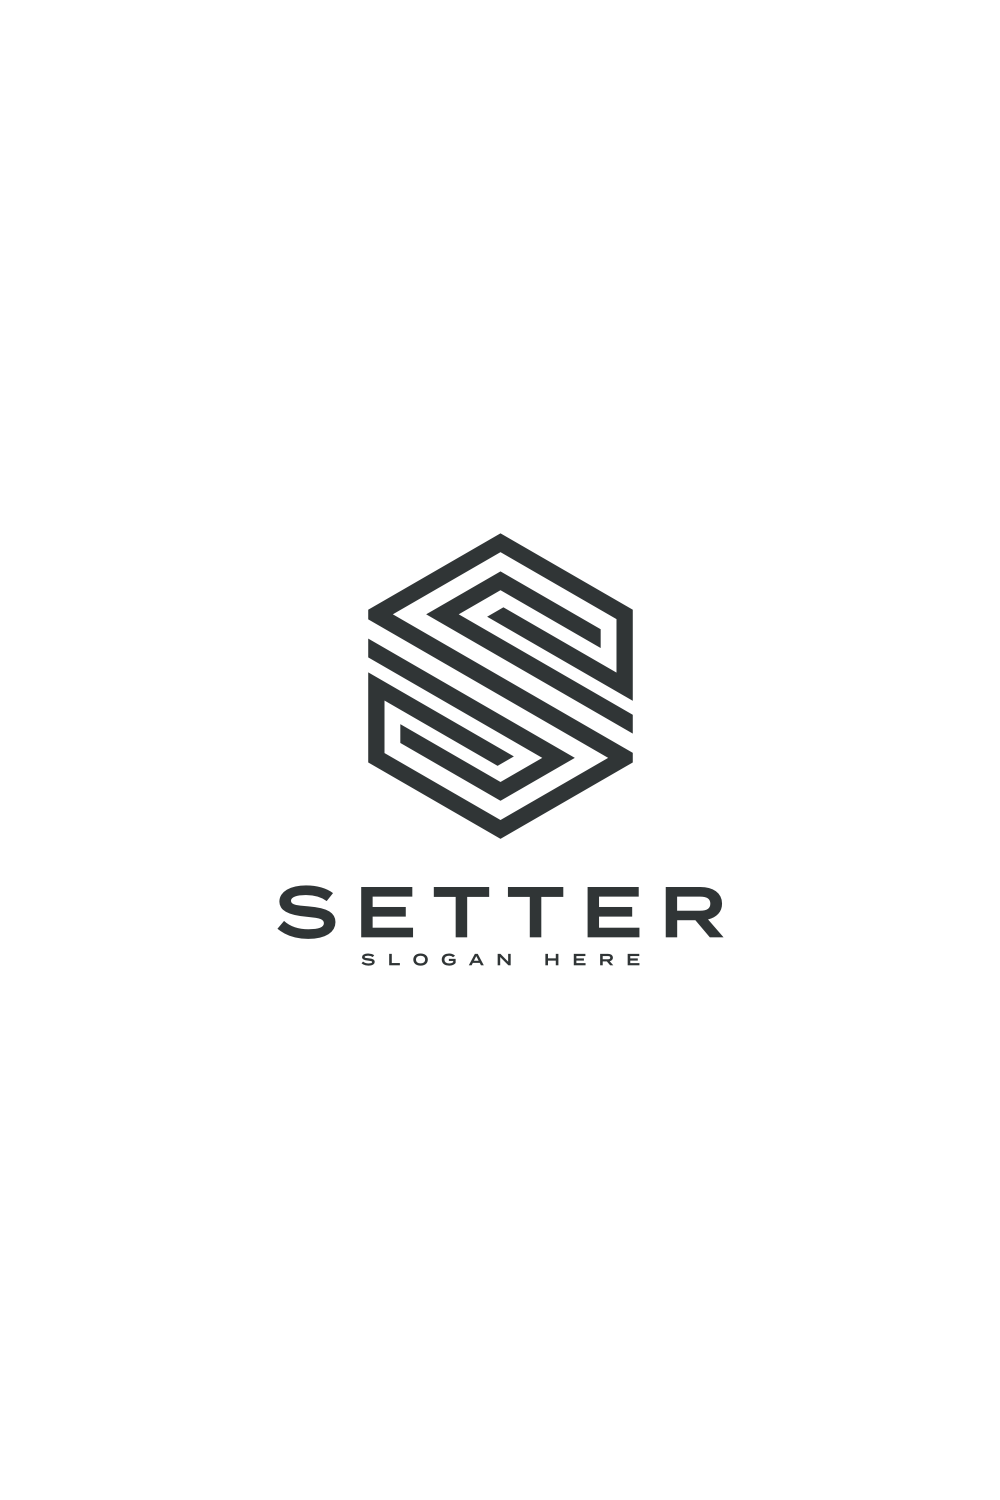 Initial Letter S Logo Vector Design Line Style pinterest image.